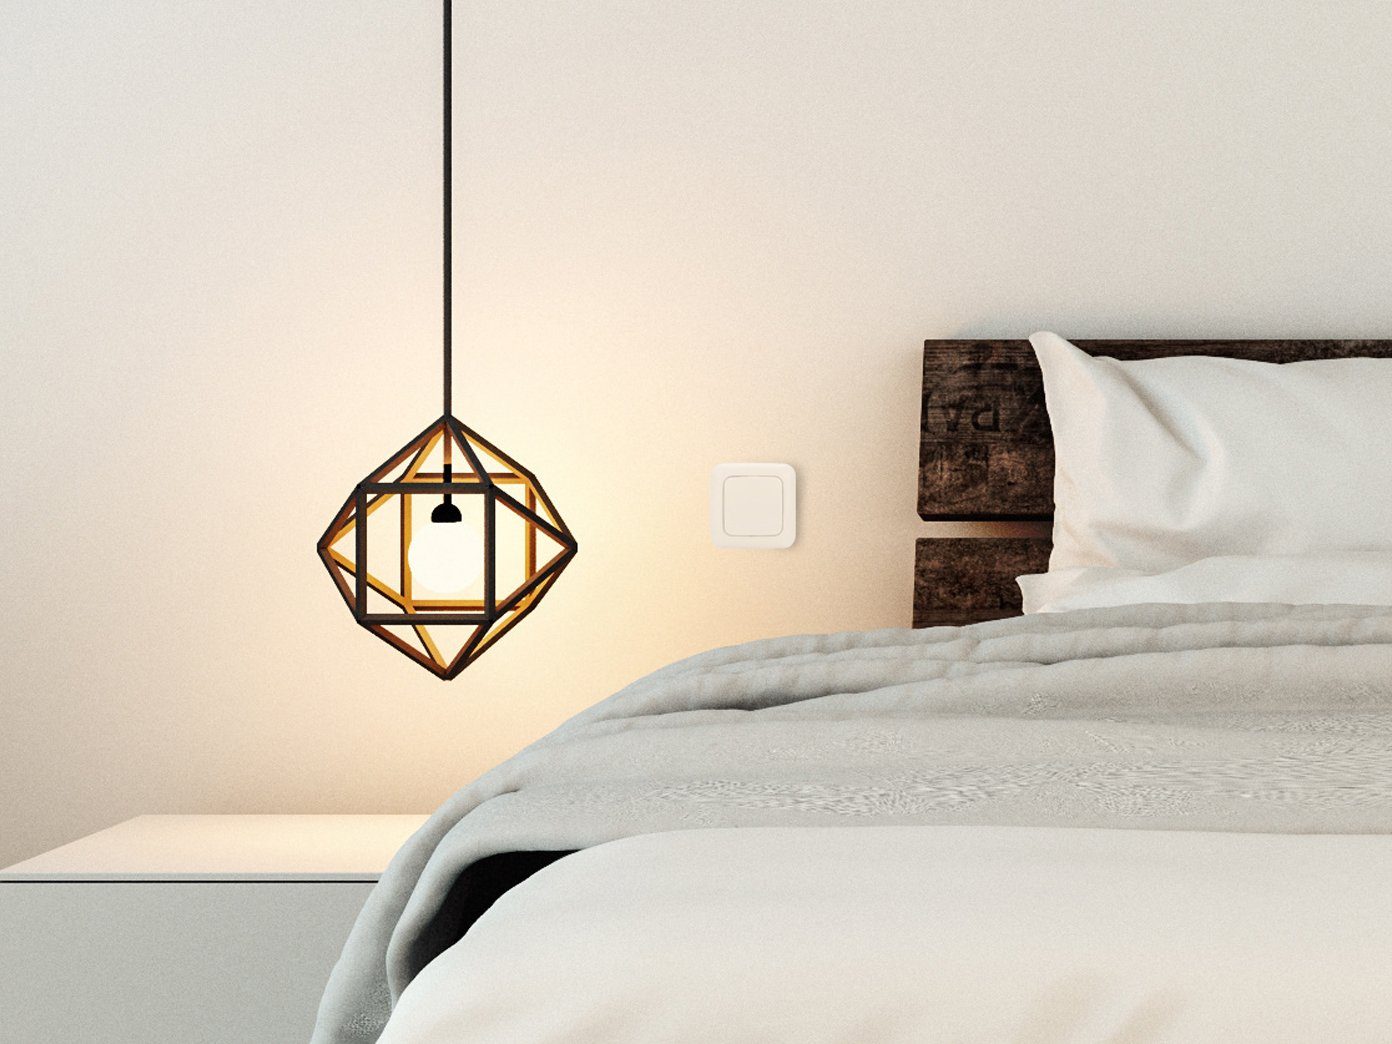 smartwares Licht-Funksteuerung, Smart Home Funk + Taster Schalter Set - Wandschalter Einbaudimmer